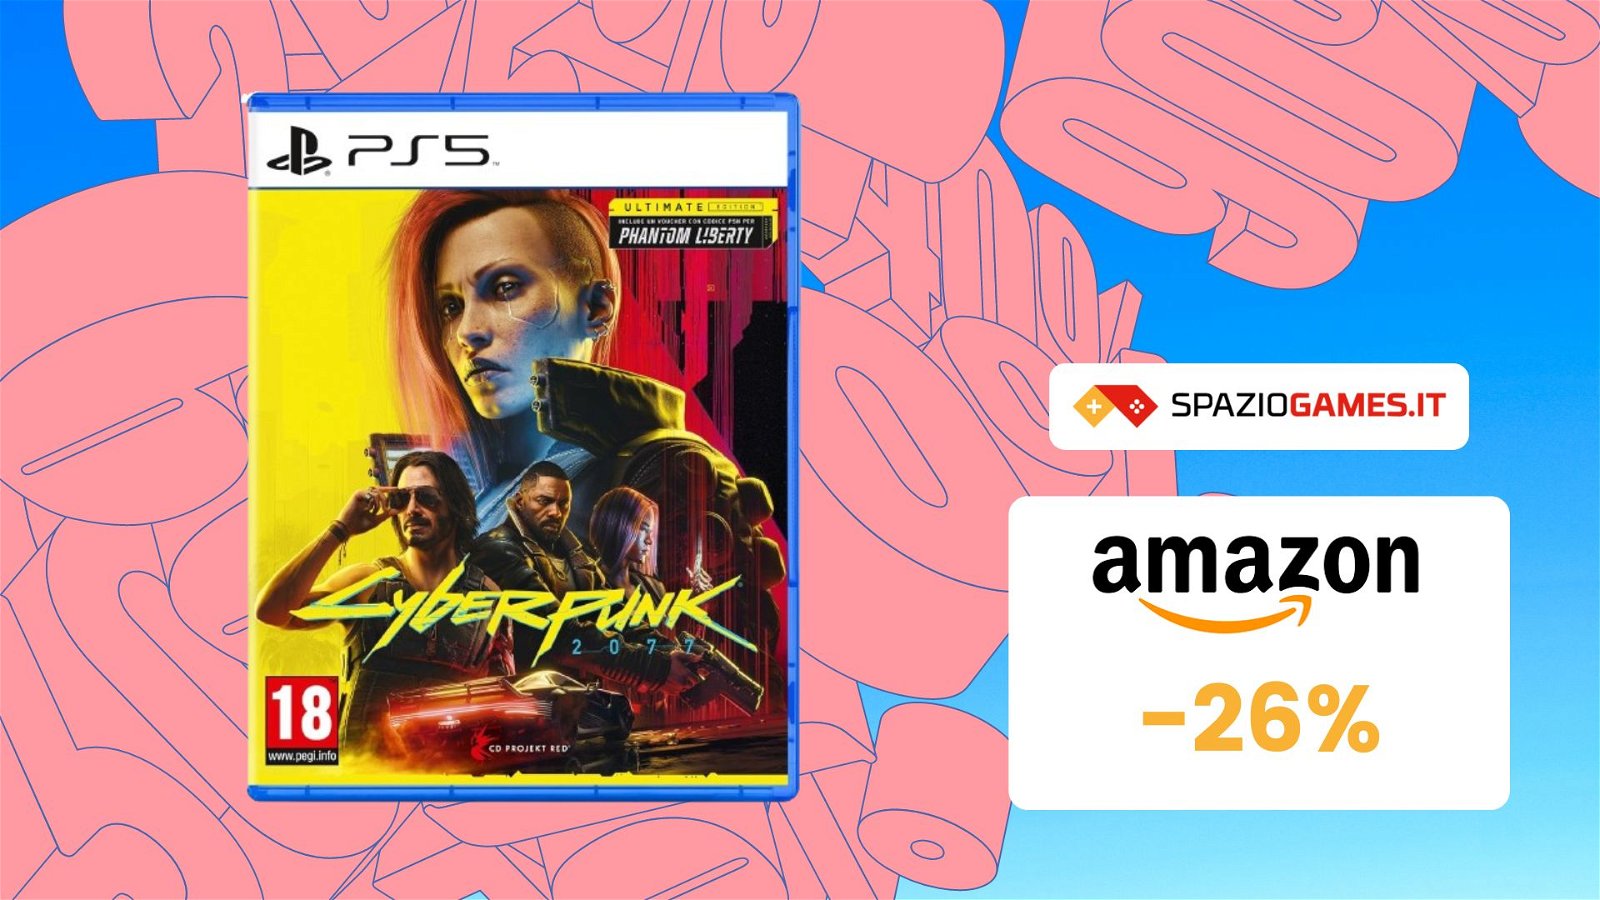 Cyberpunk 2077 Ultimate Edition non è mai costato COSI' POCO! MENO di 40€!